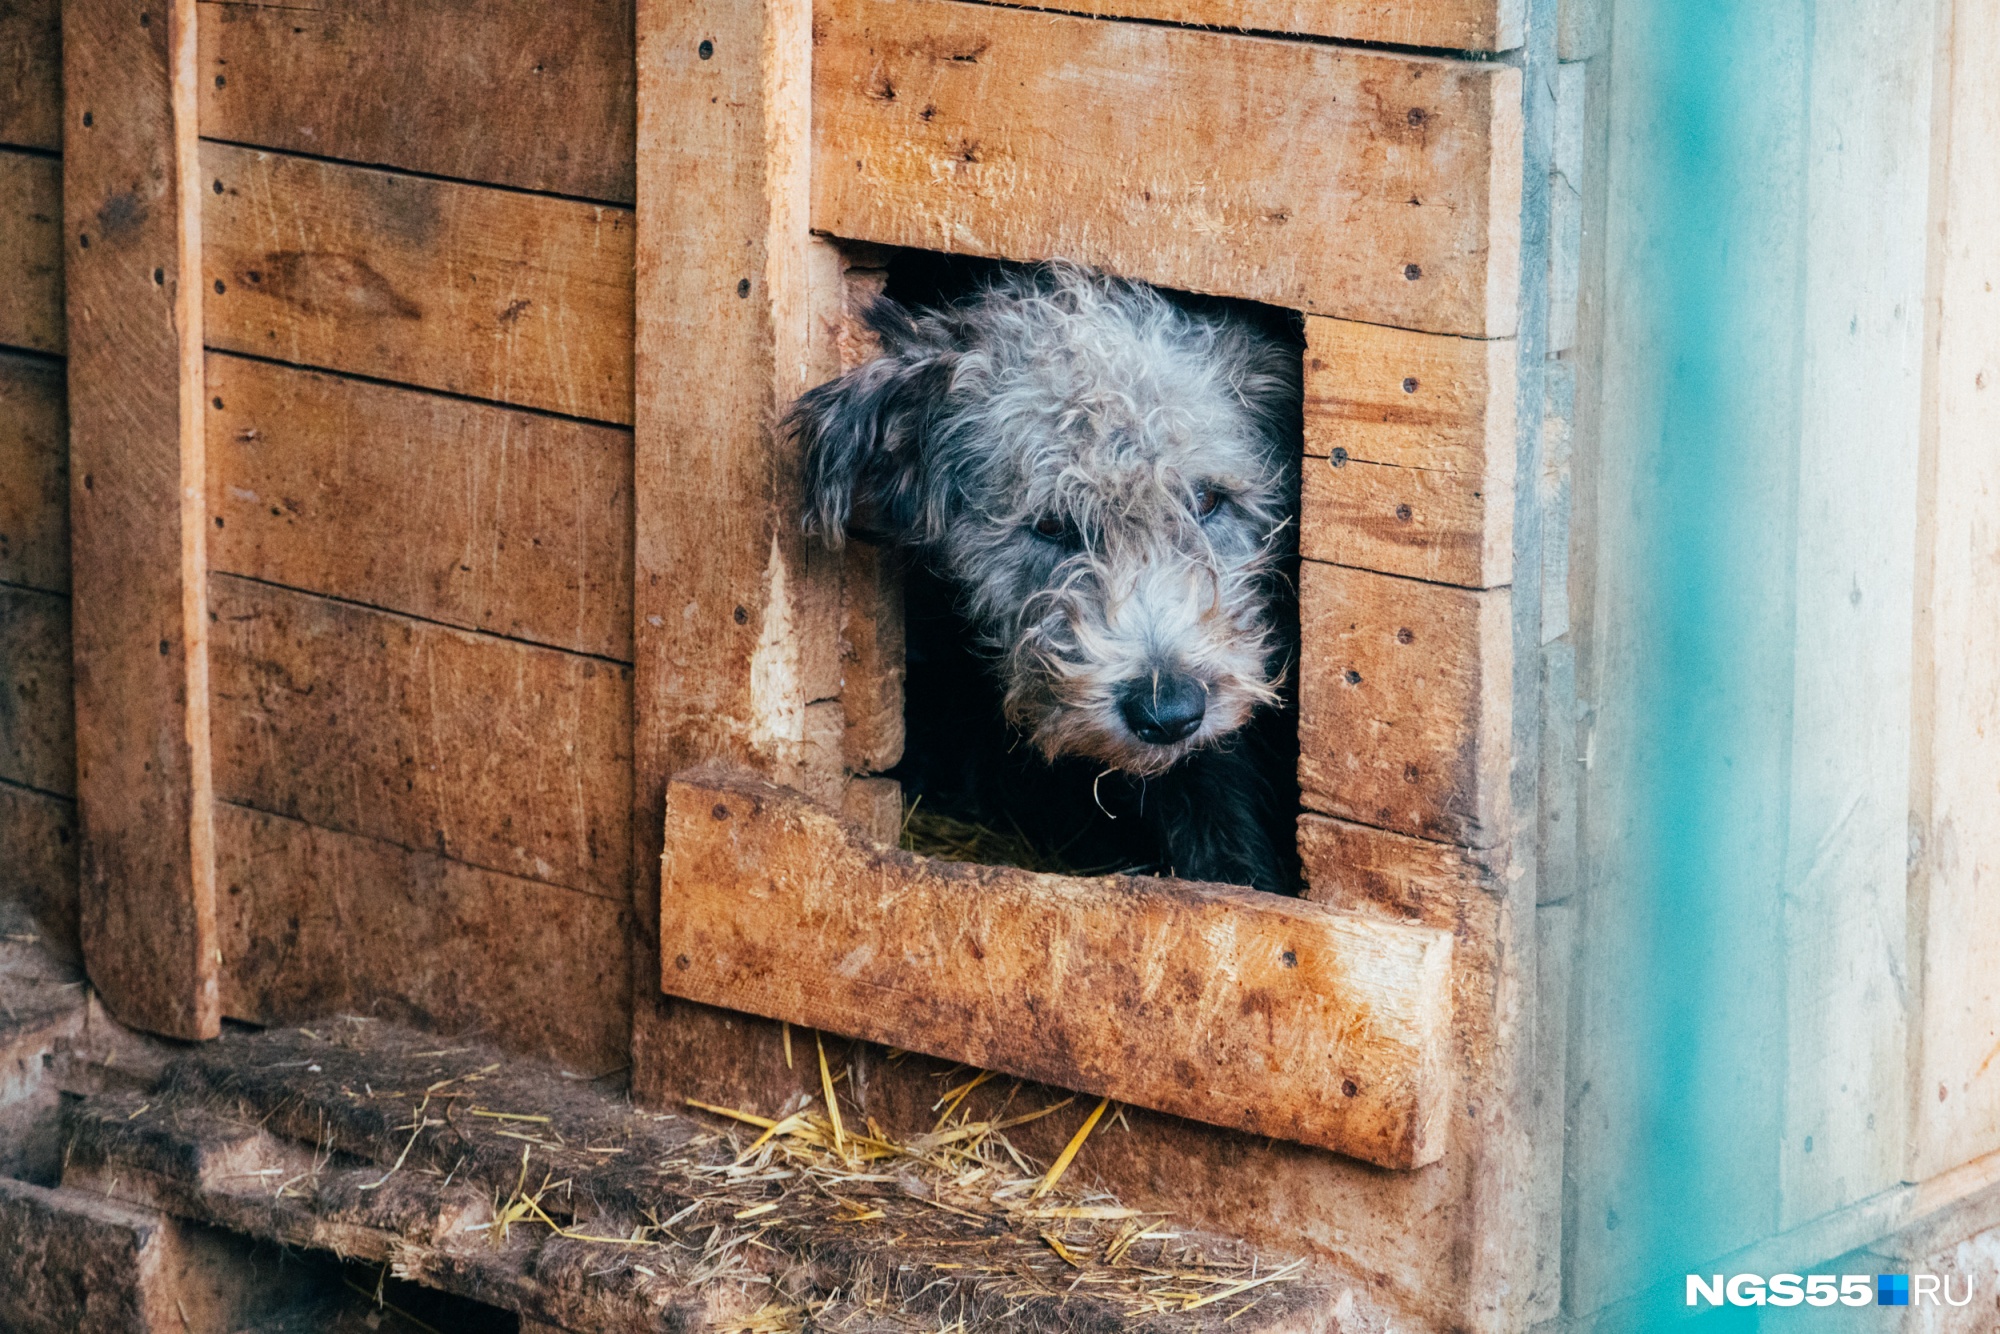 Прокуратура нашла нарушения в приюте для собак «Рыжая моська» в Чите